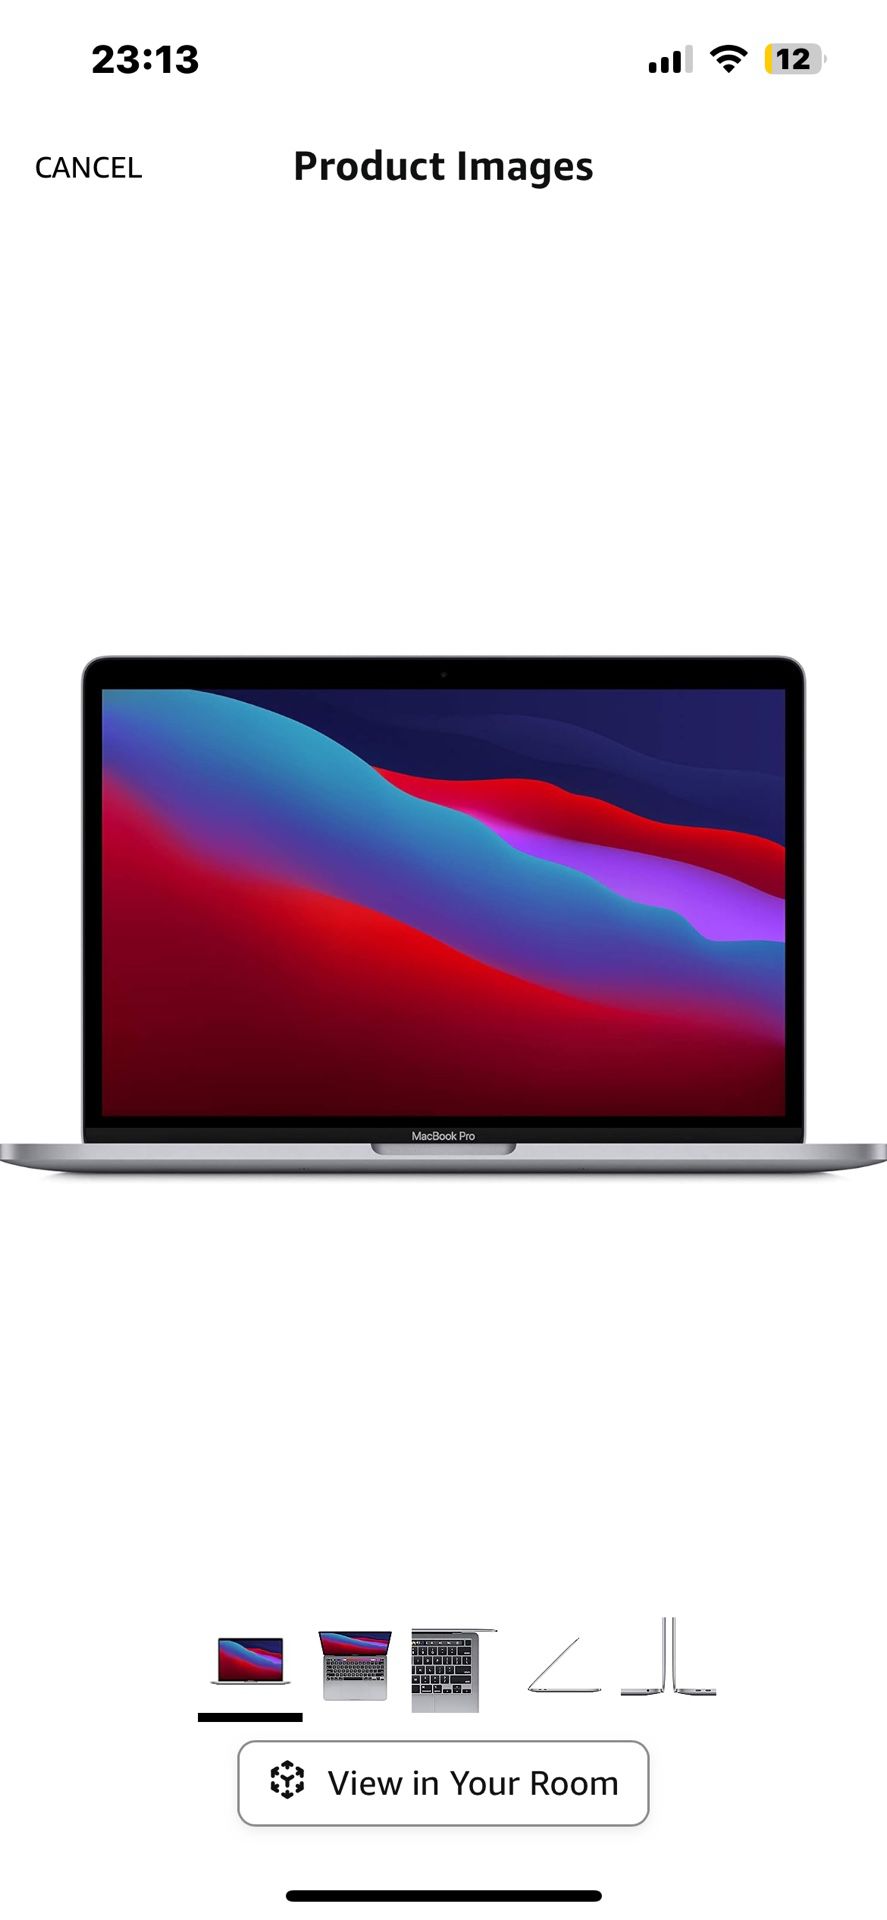 Apple MacBook Pro 